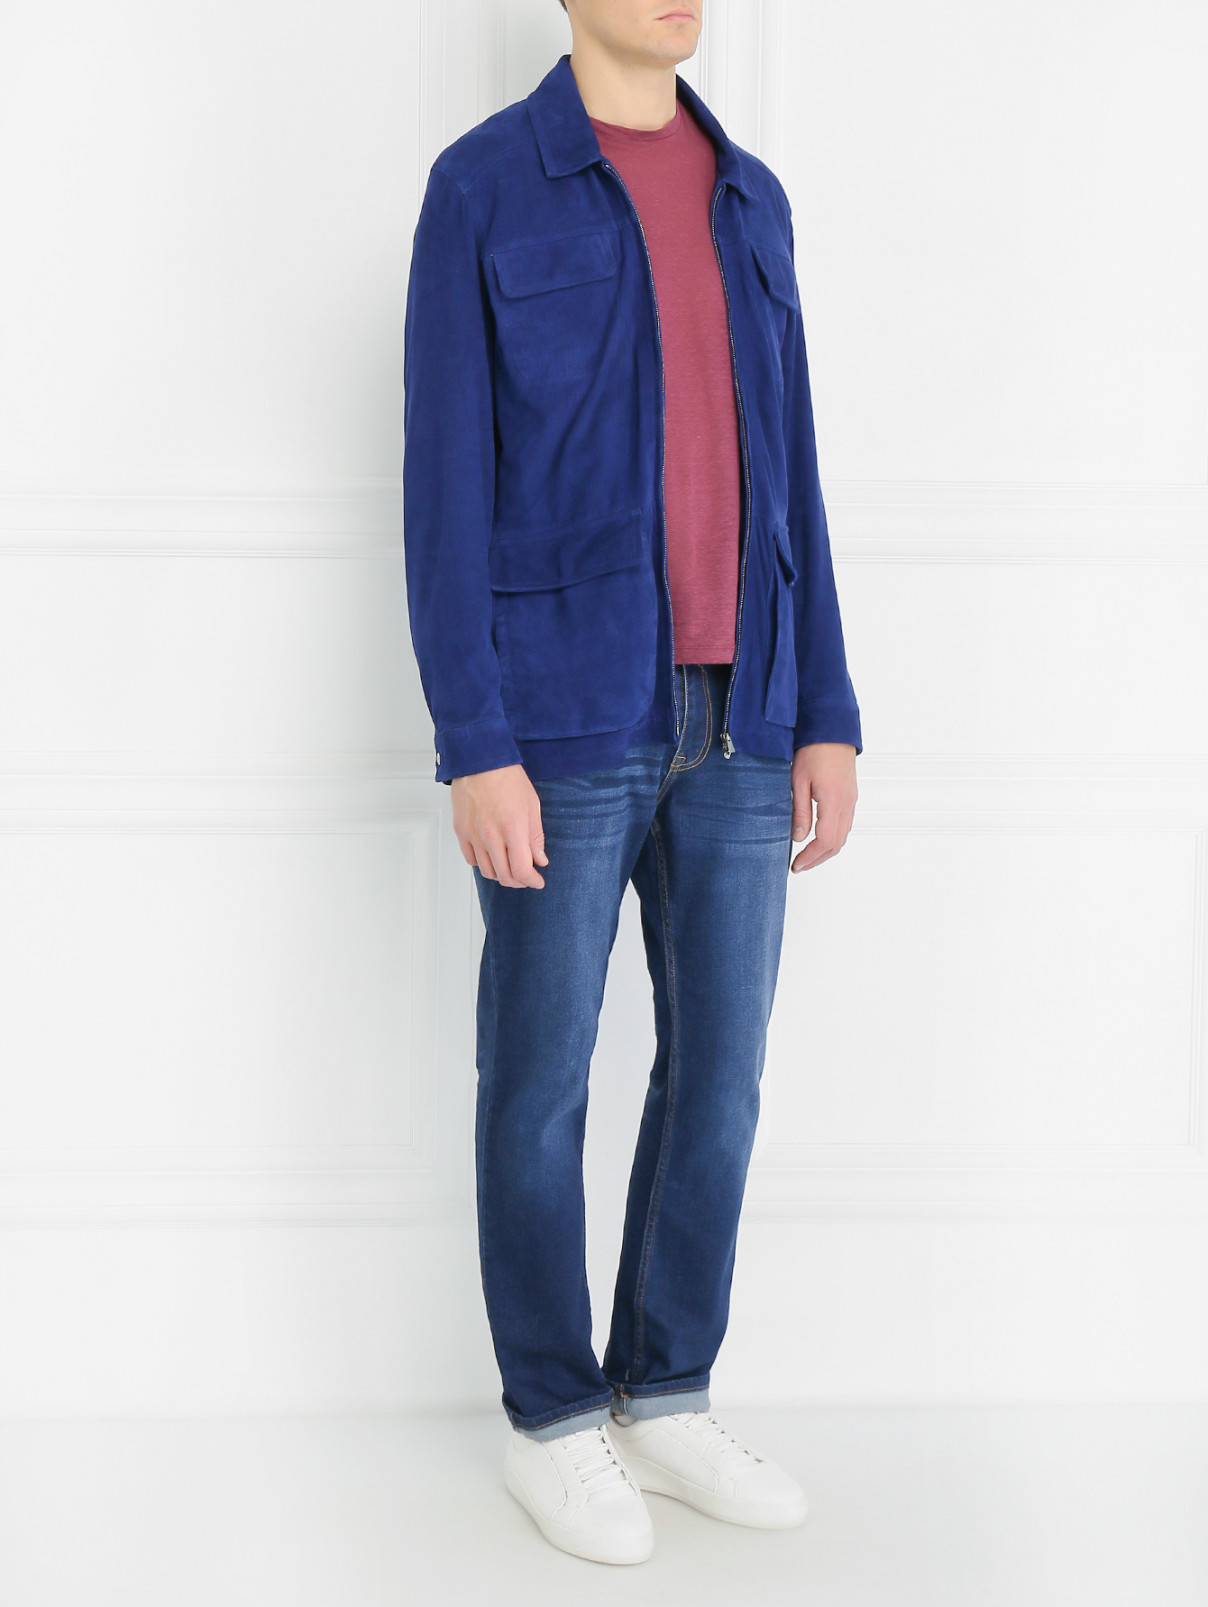 Куртка из кожи с нагрудными карманами Isaia  –  Модель Общий вид  – Цвет:  Синий